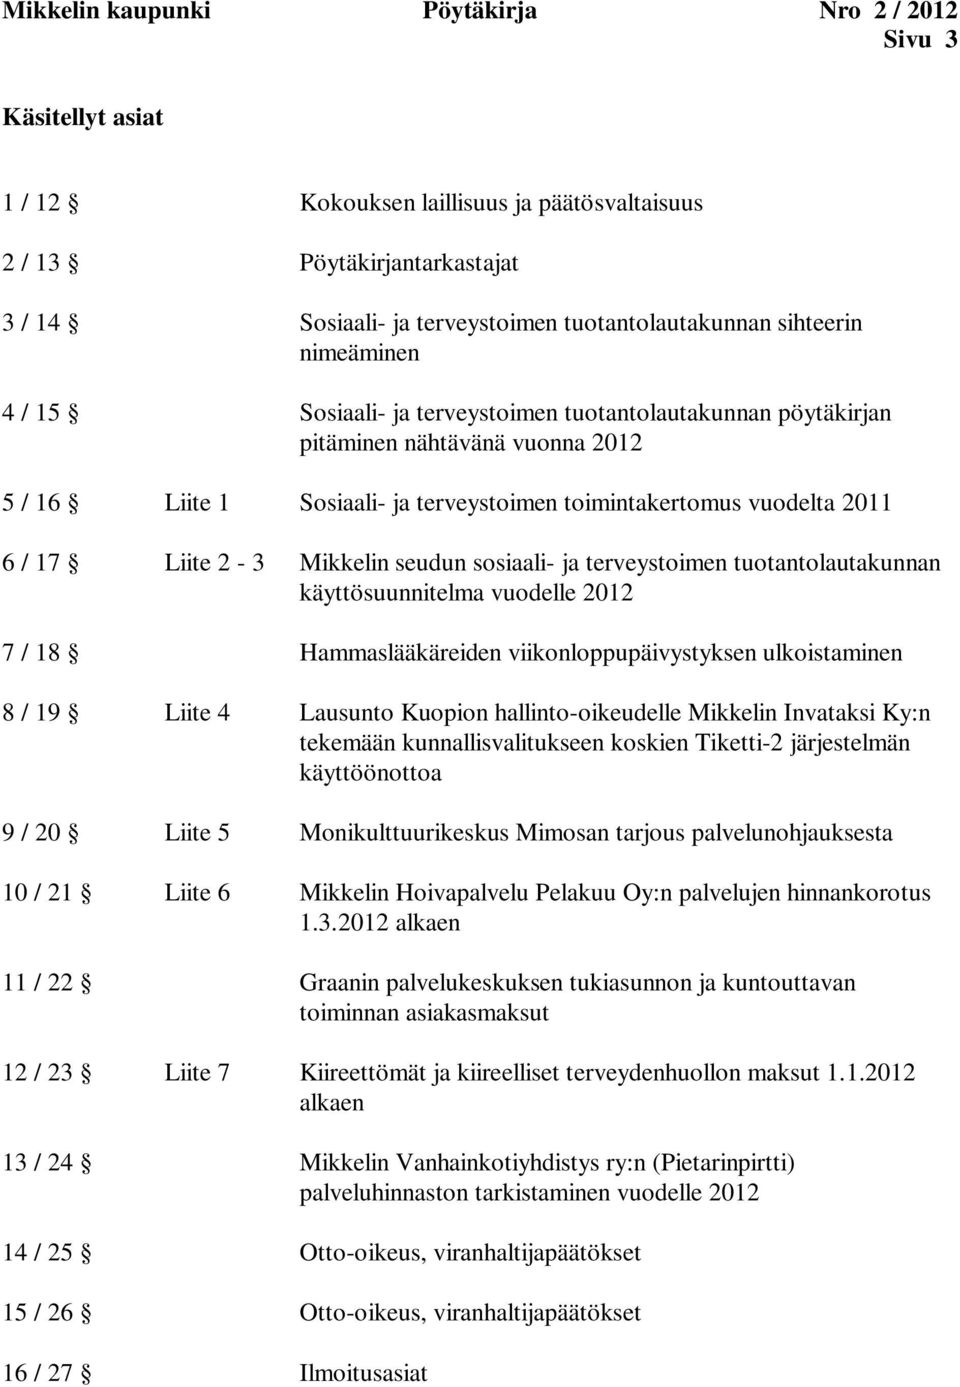 käyttösuunnitelma vuodelle 2012 7 / 18 Hammaslääkäreiden viikonloppupäivystyksen ulkoistaminen 8 / 19 Liite 4 Lausunto Kuopion hallinto-oikeudelle Mikkelin Invataksi Ky:n tekemään